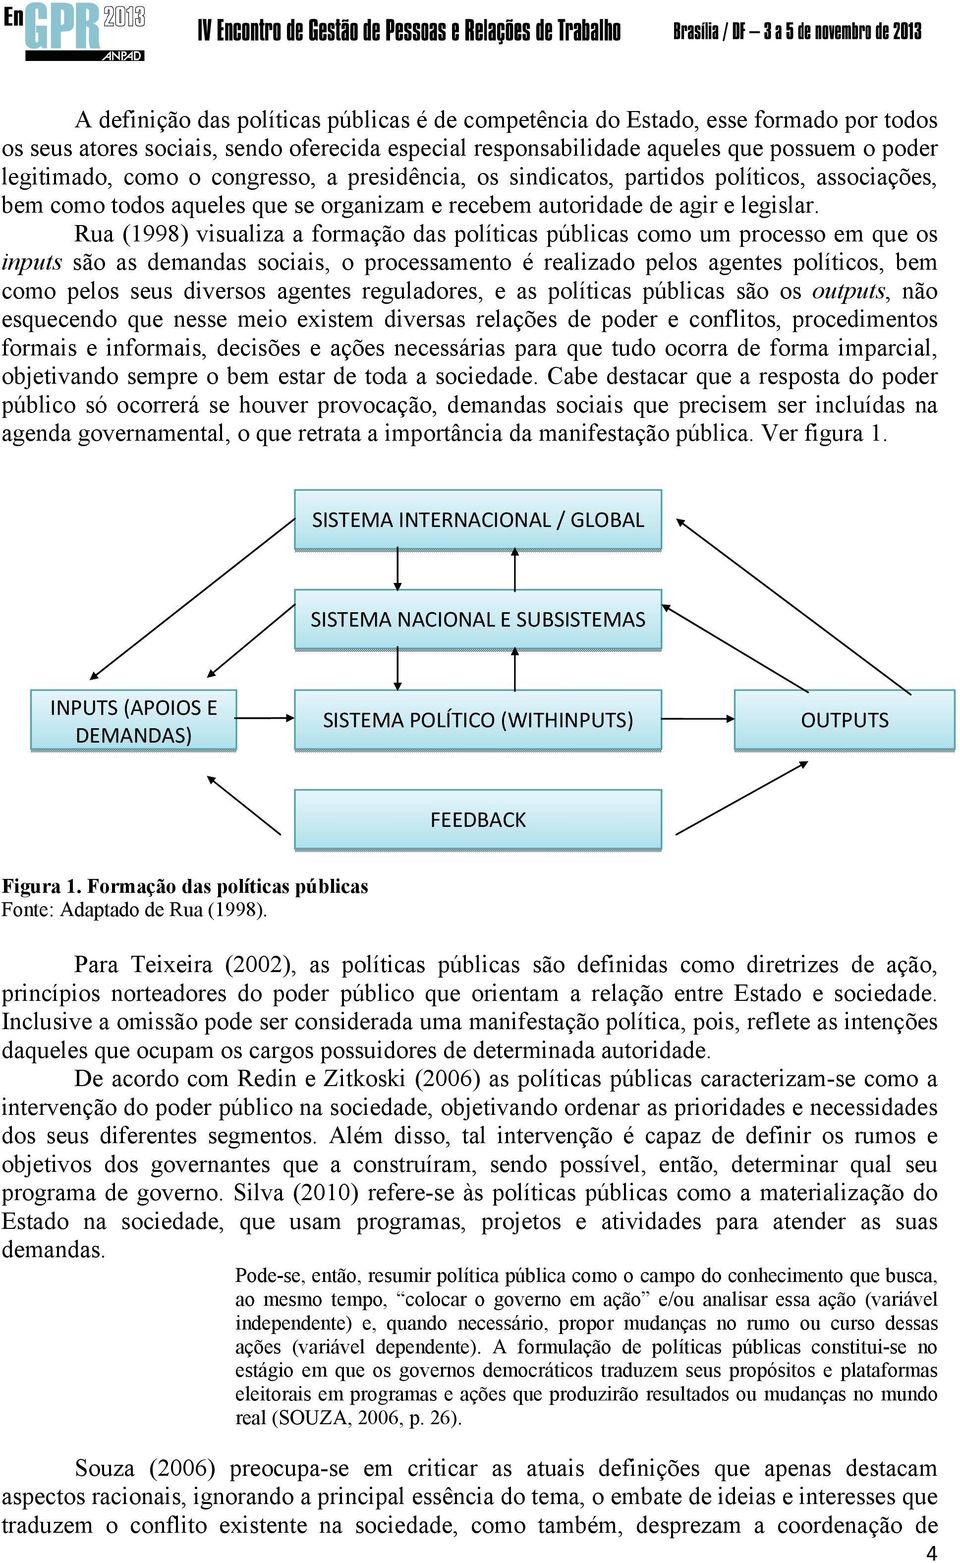 Rua (1998) visualiza a formação das políticas públicas como um processo em que os inputs são as demandas sociais, o processamento é realizado pelos agentes políticos, bem como pelos seus diversos